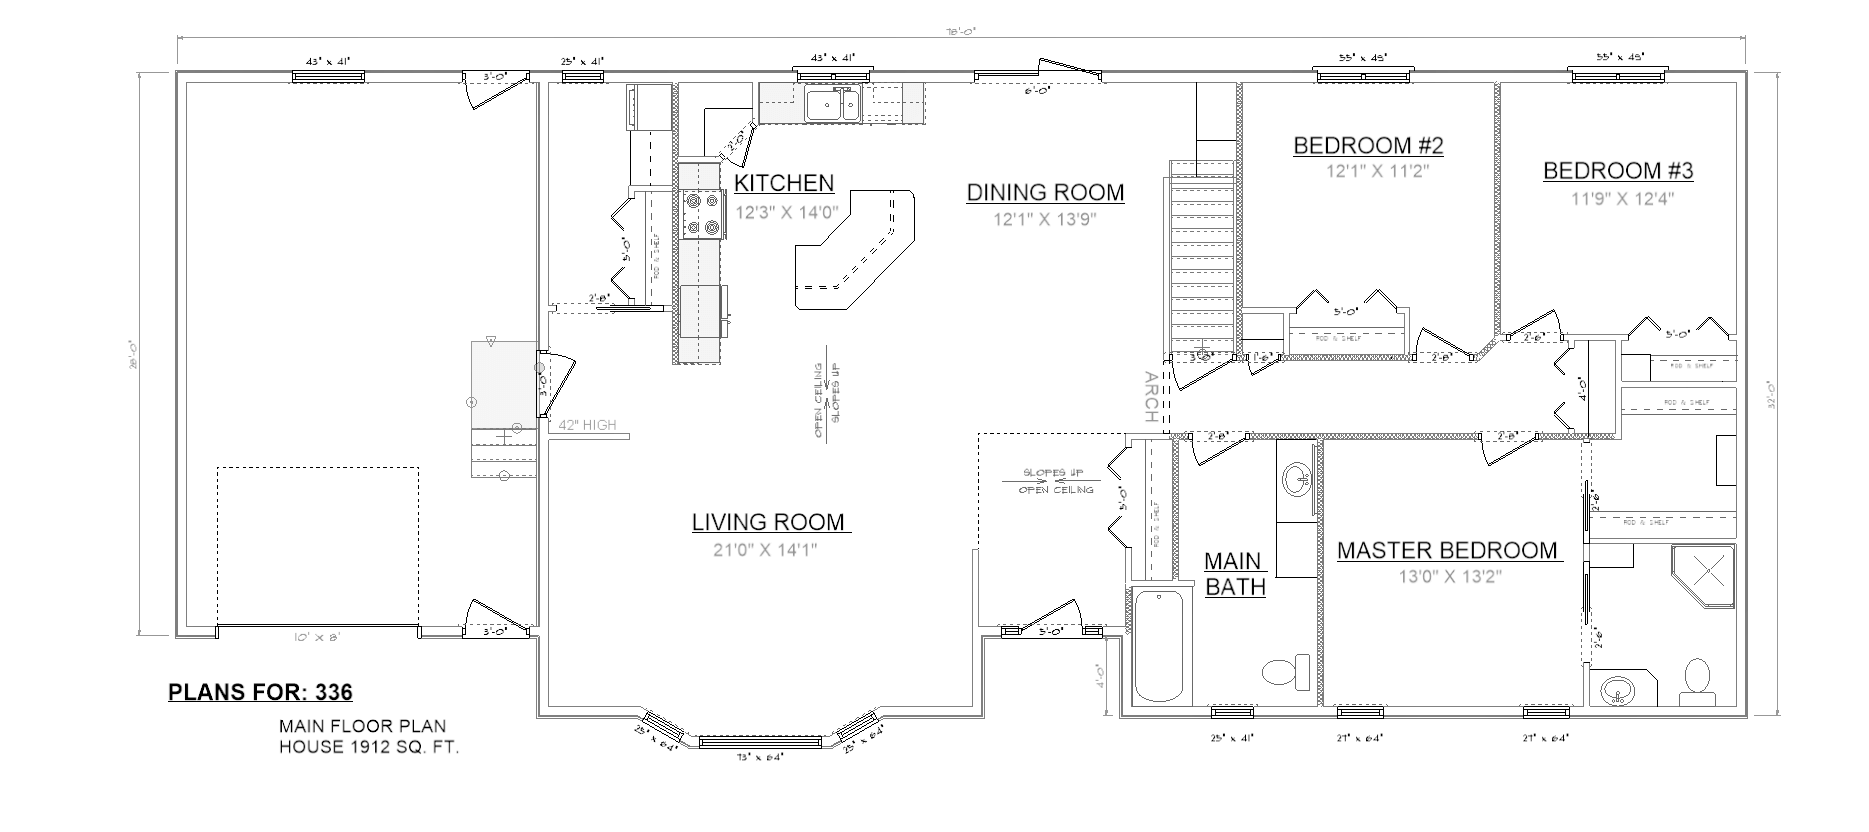 Penner Homes Floor Plan Id: 336